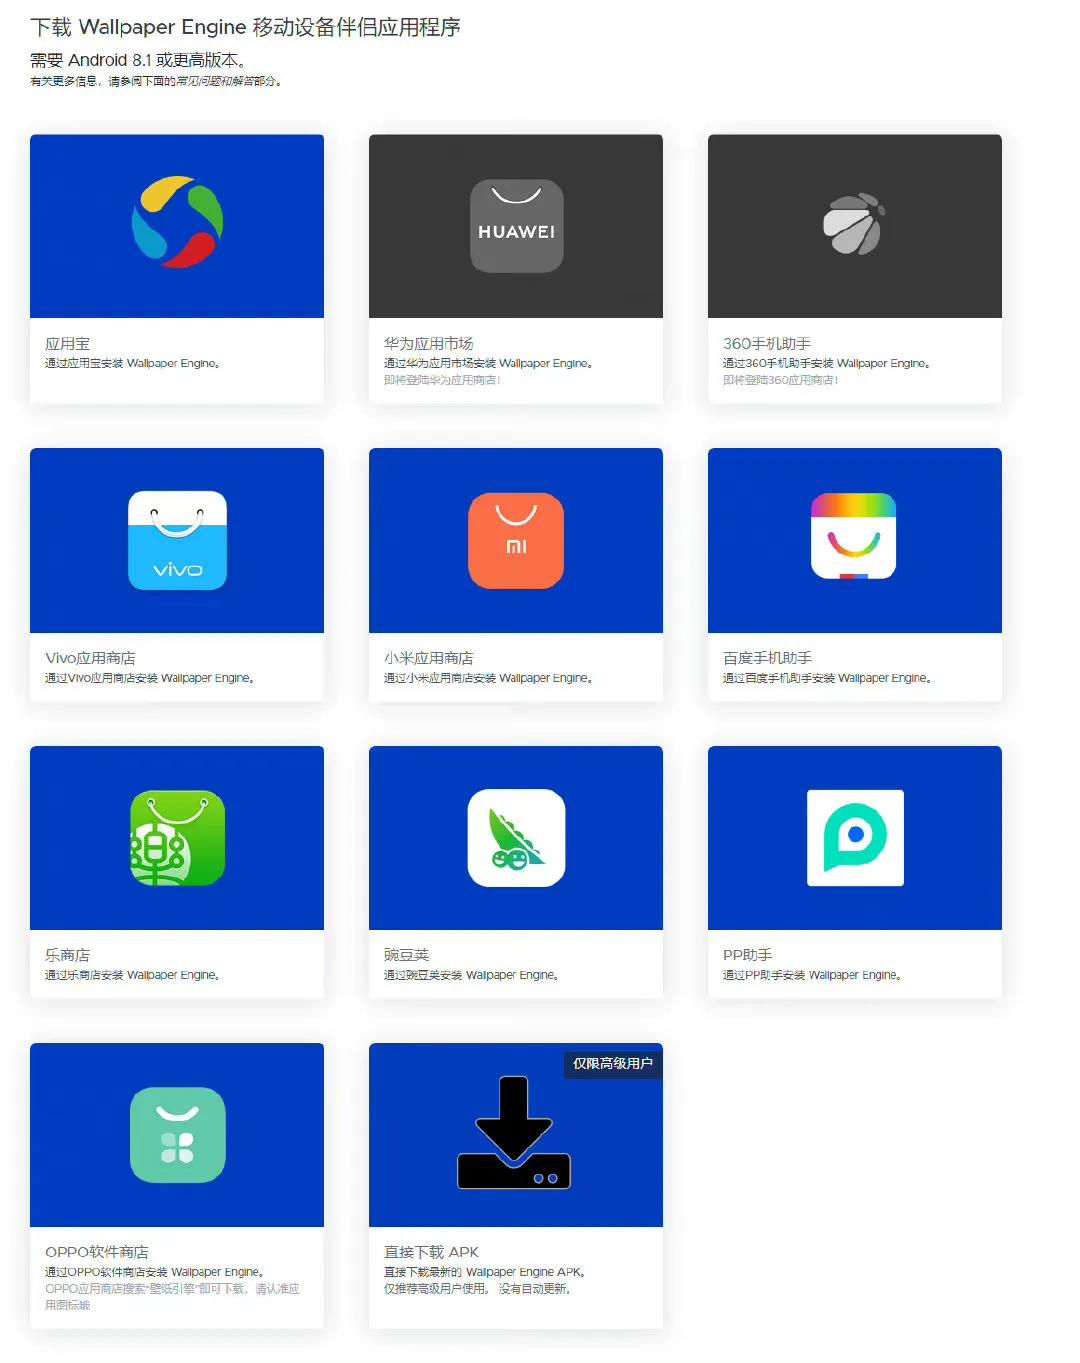 壁纸软件《Wallpaper Engine》的安卓应用已经在很多应用商店推出